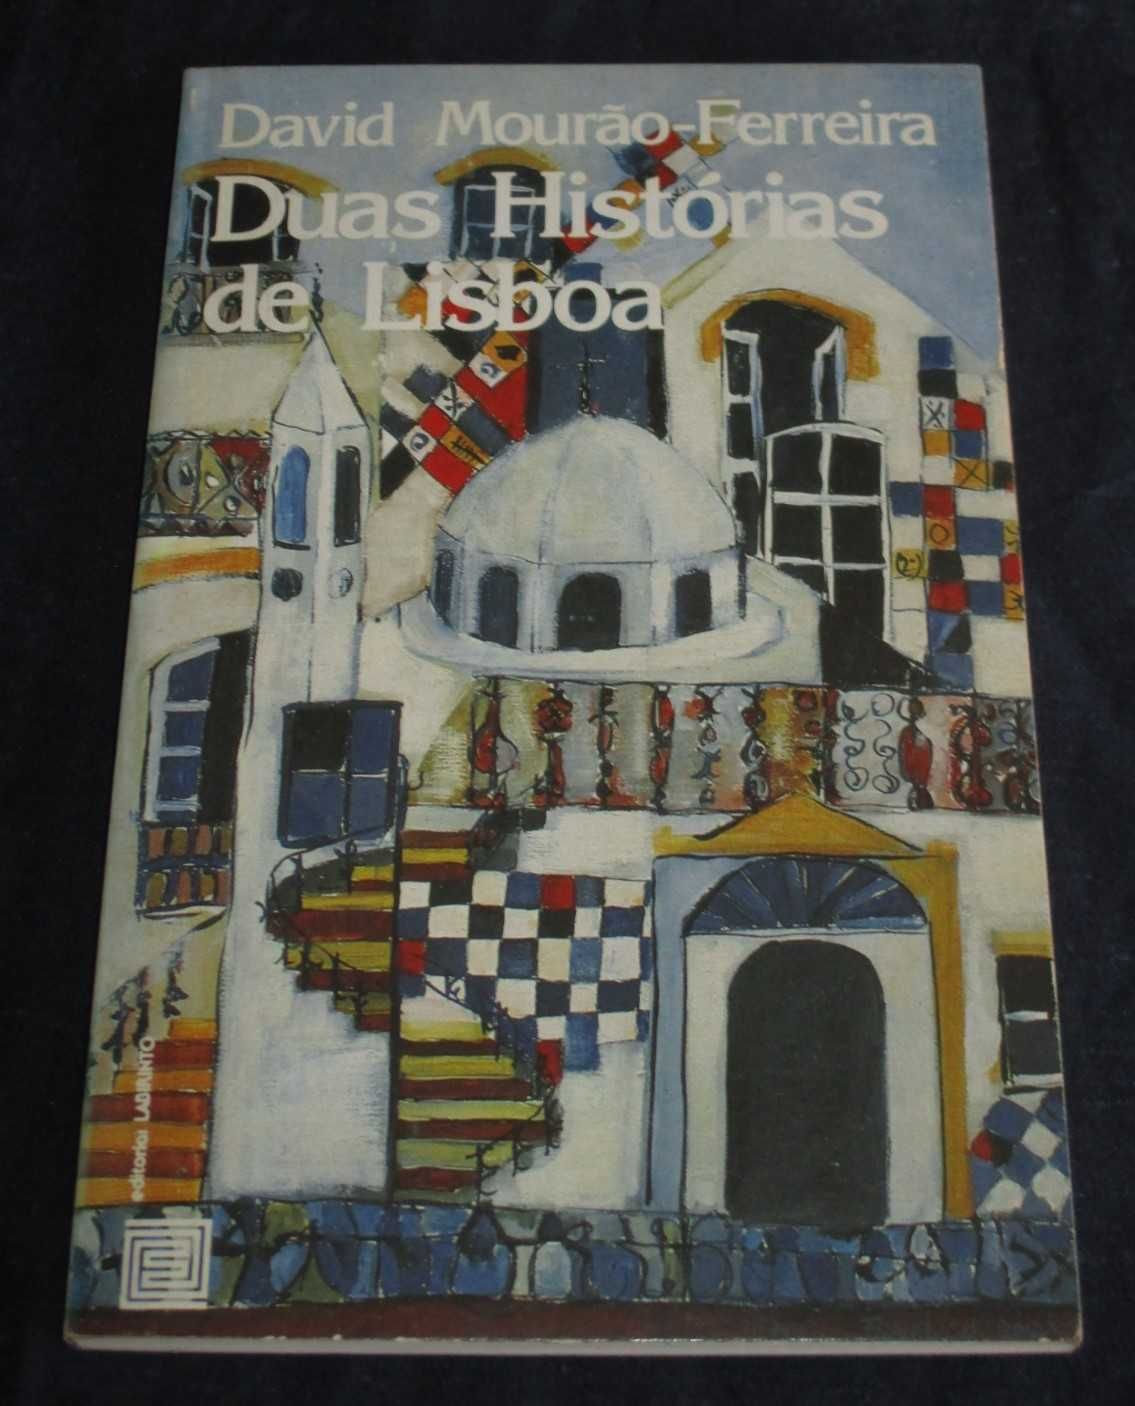 Livro Duas Histórias de Lisboa David Mourão-Ferreira